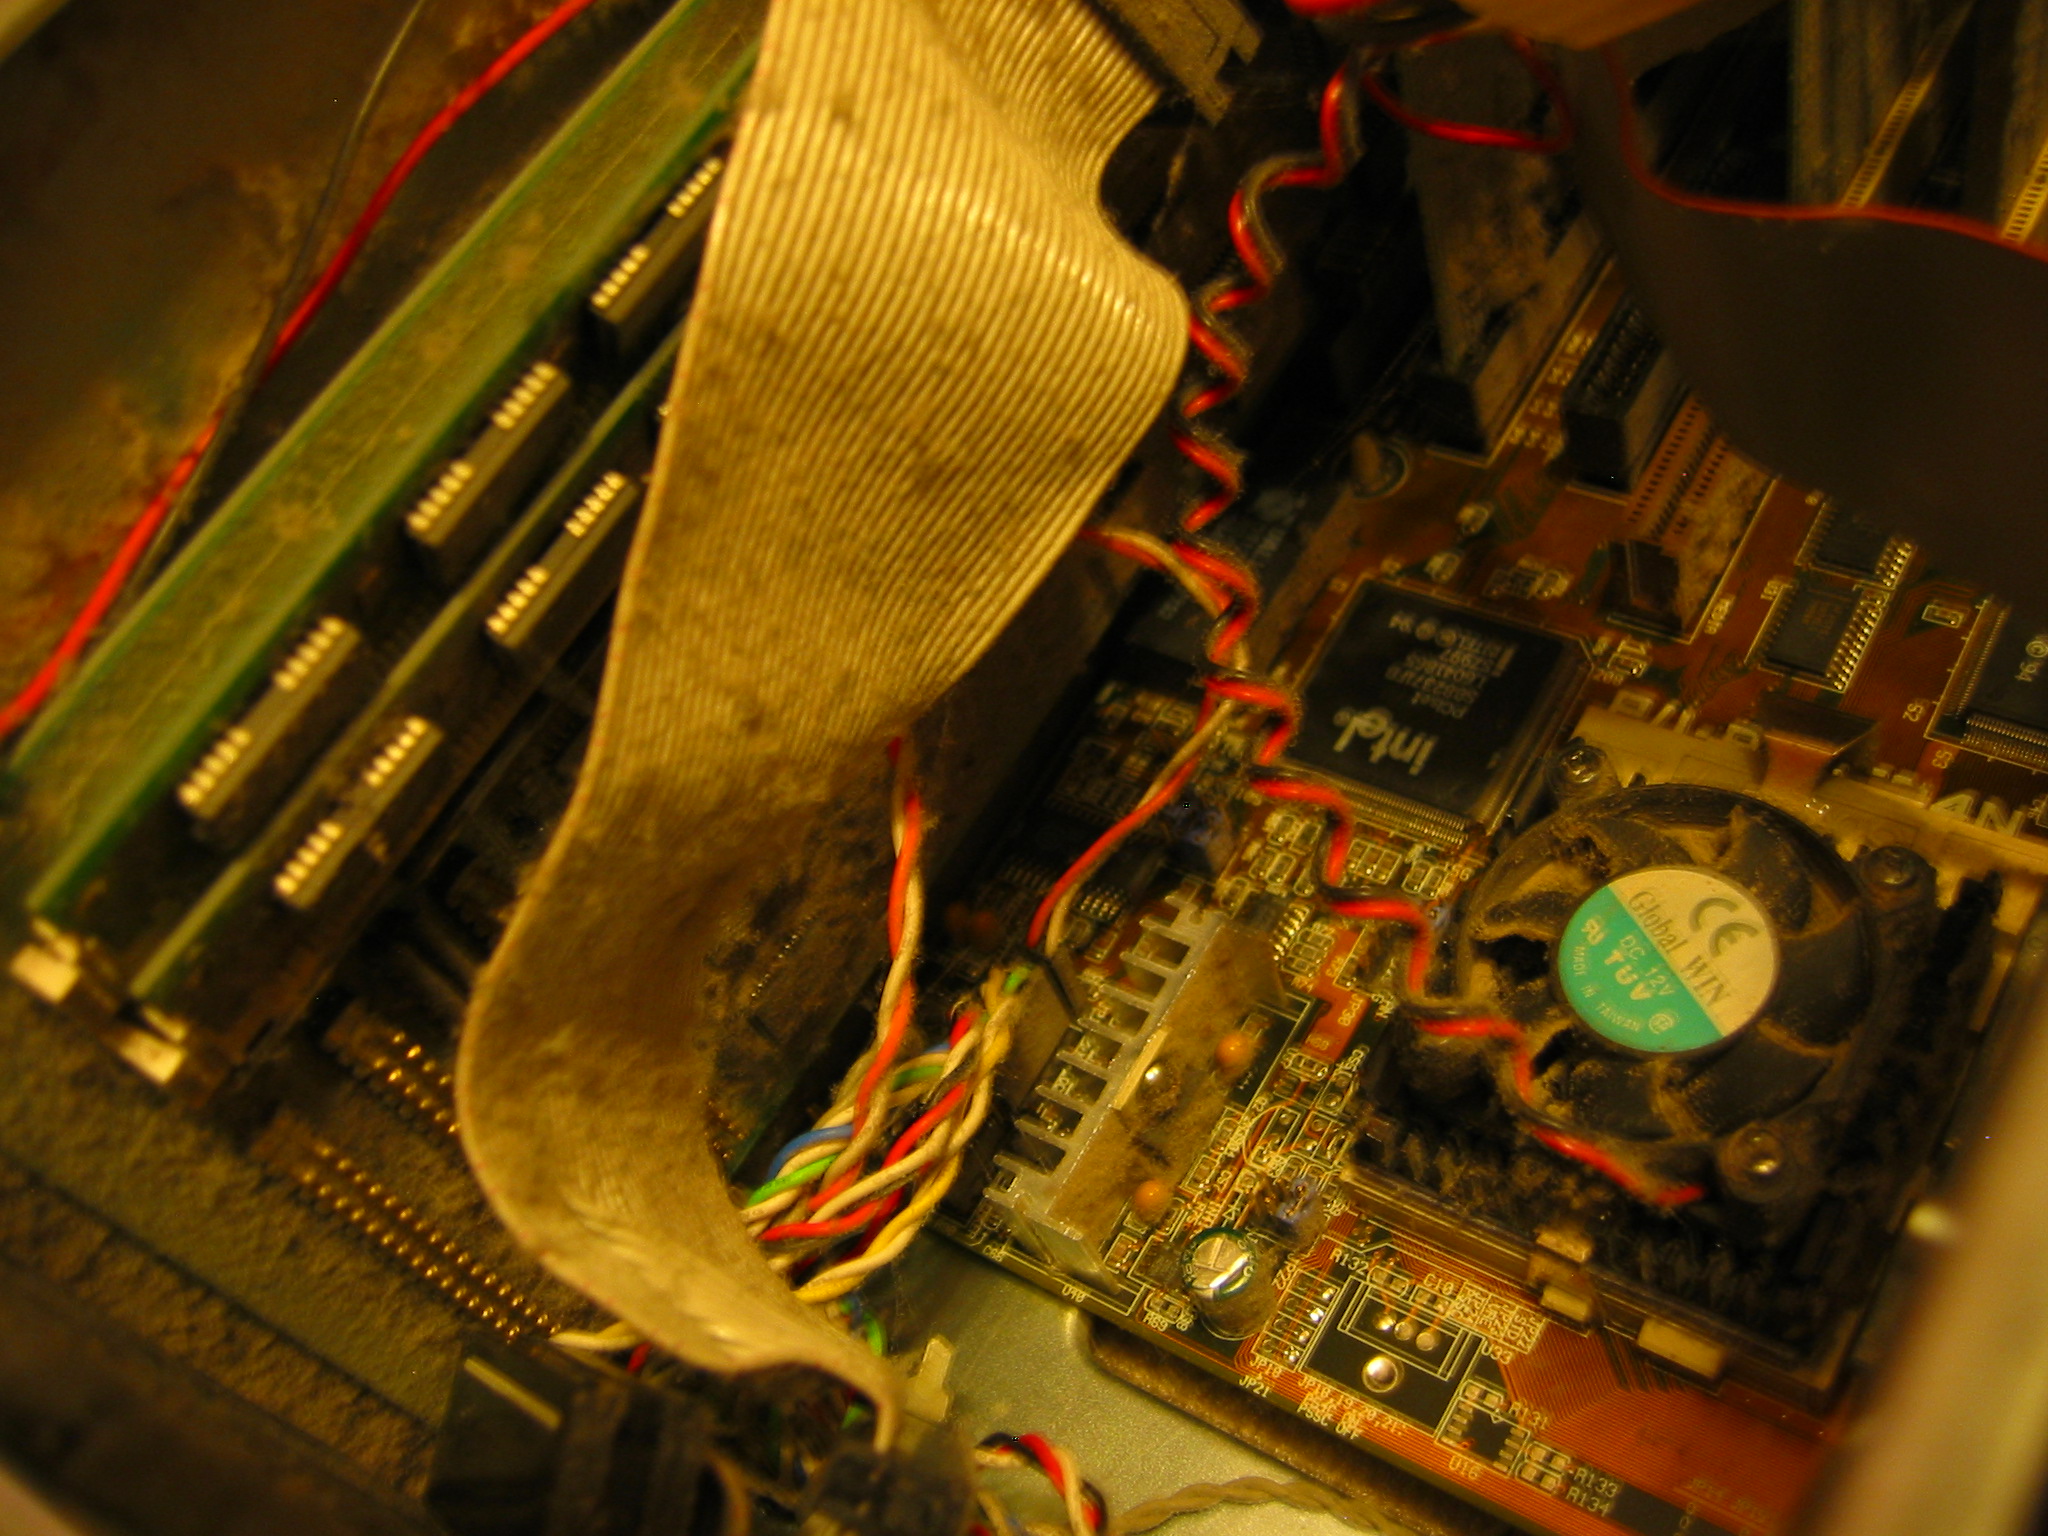 Dust around the CPU